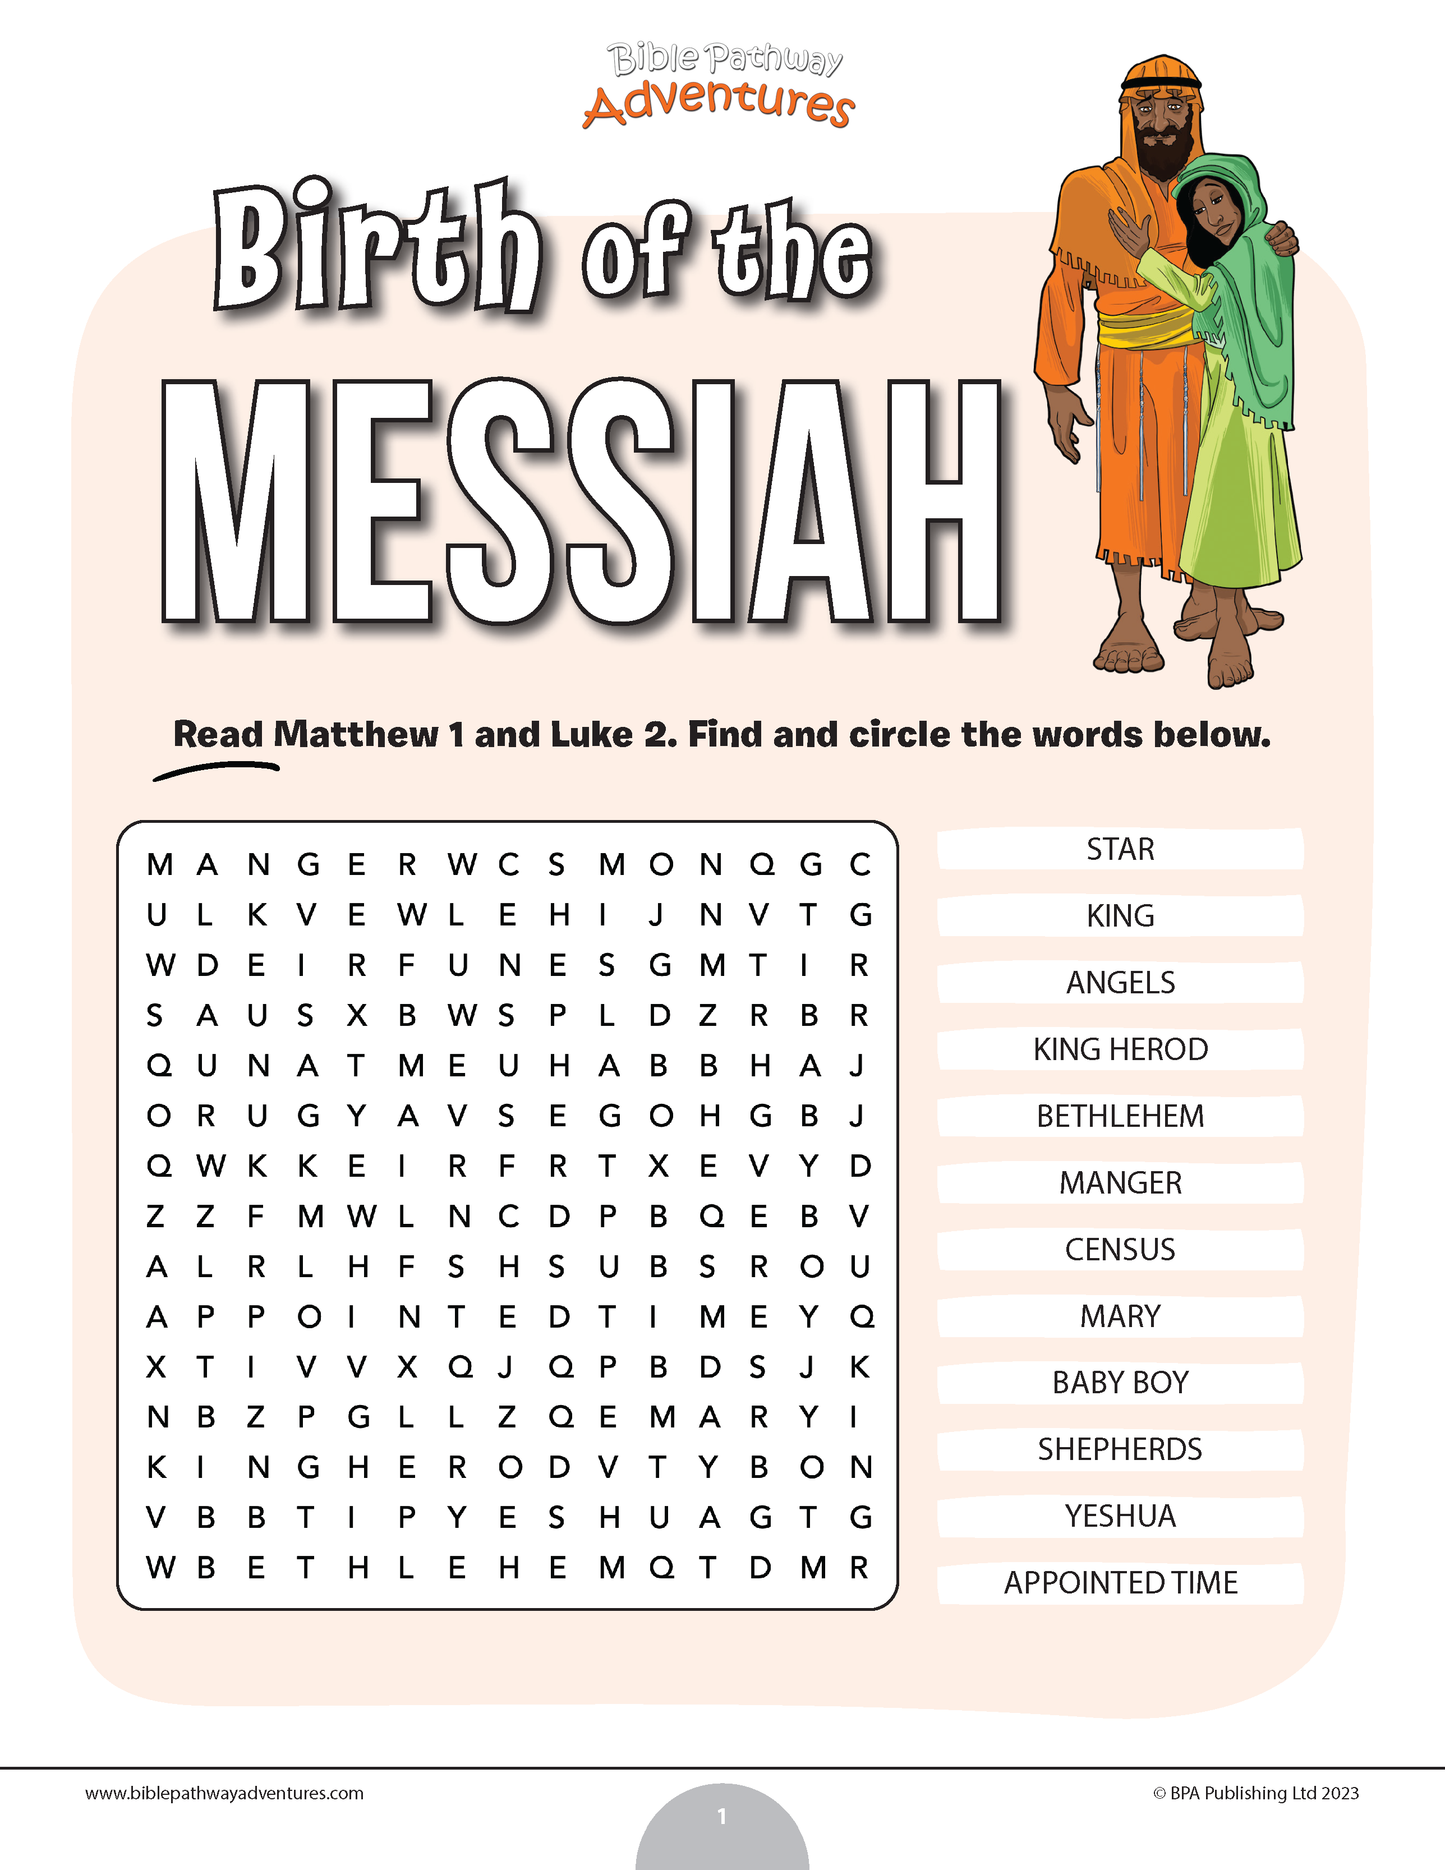 Búsqueda de palabras sobre el nacimiento del Mesías